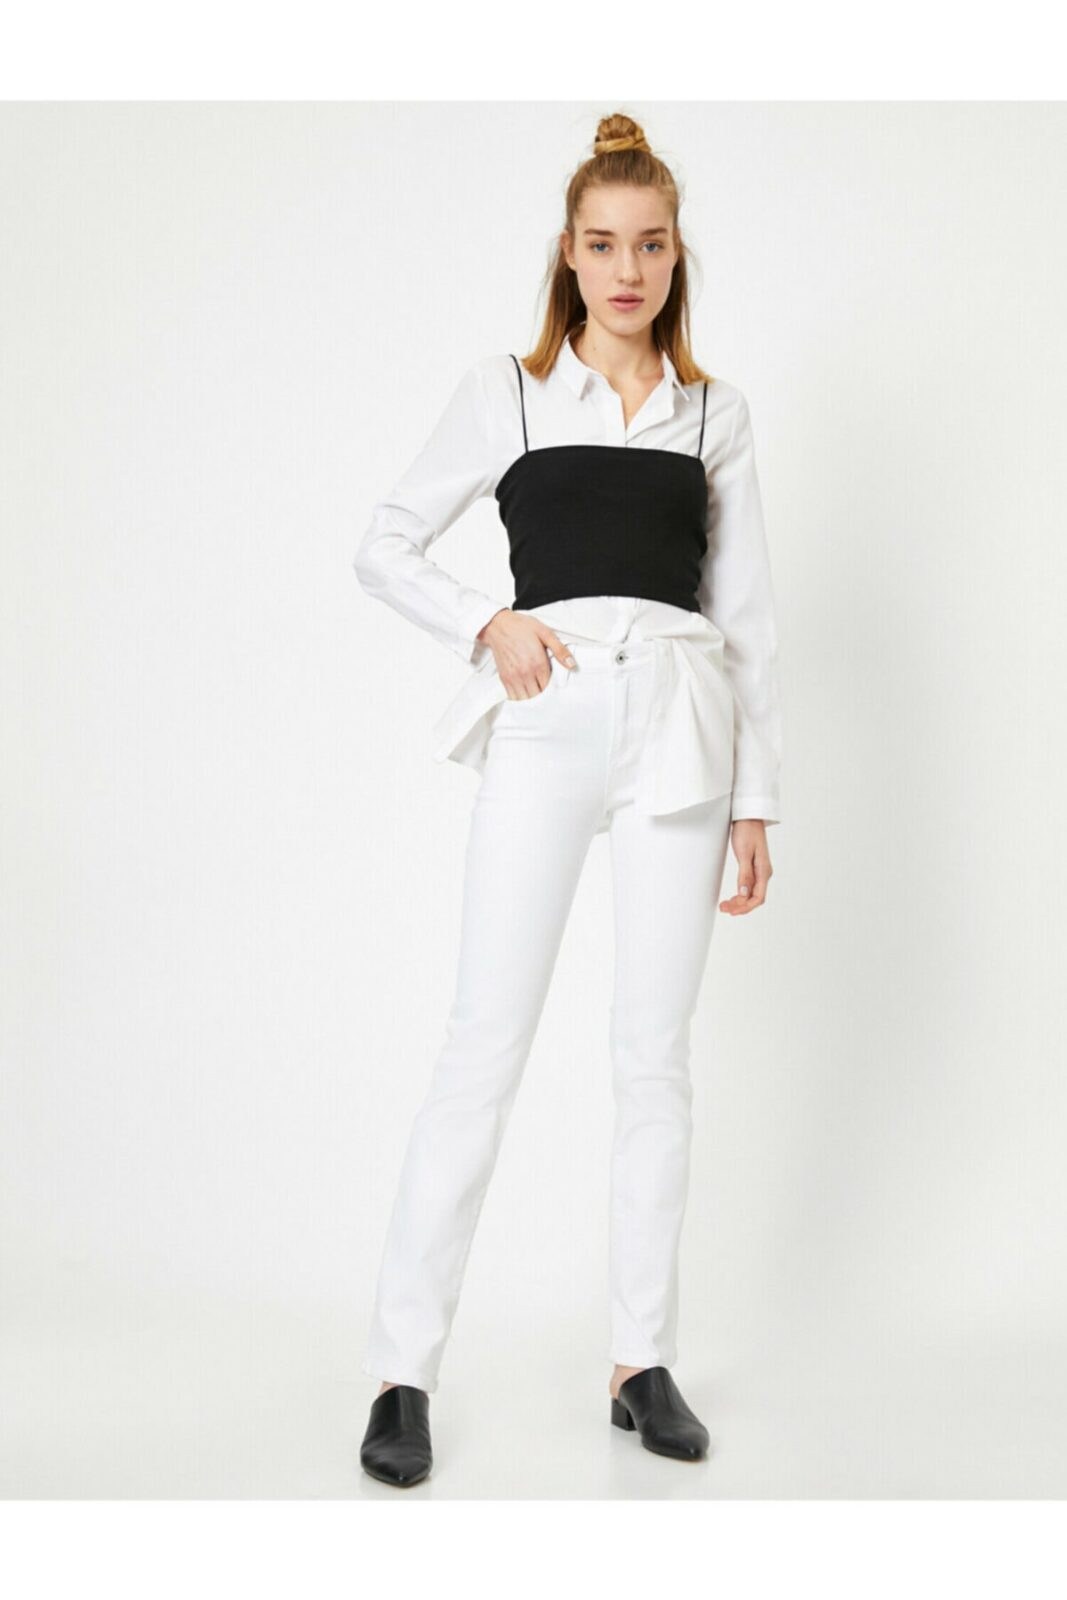 Koton Jeans - White